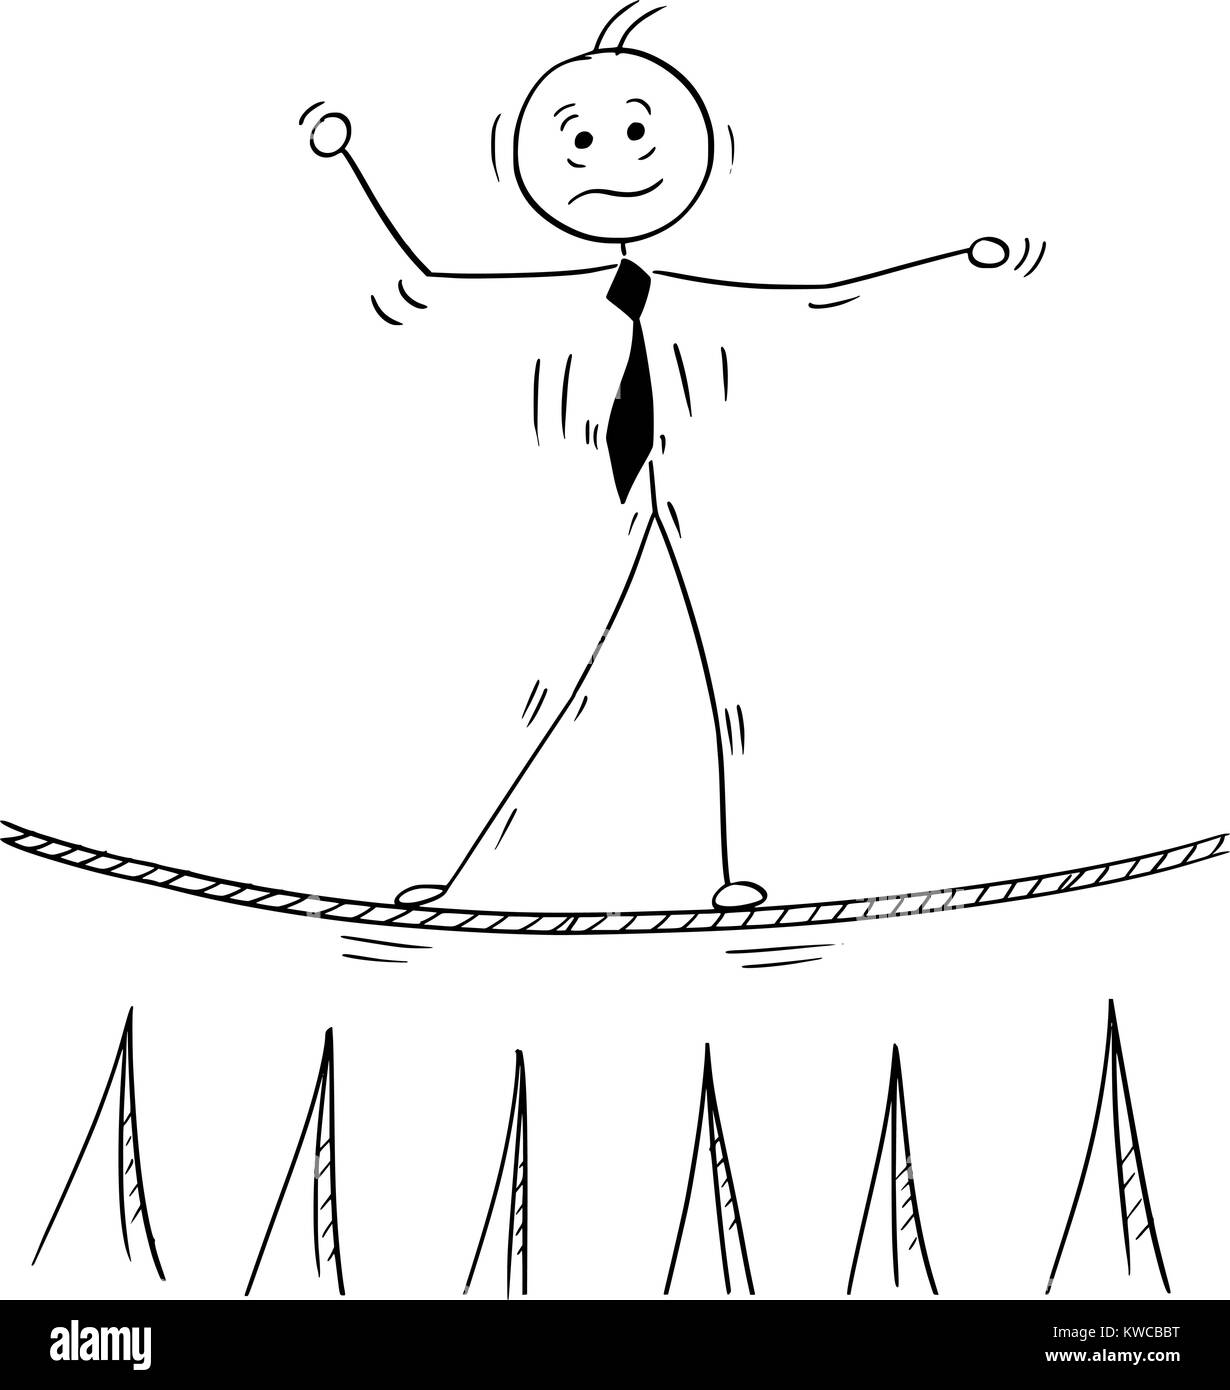 Cartoon stick man dessin illustration conceptuelle de business man balancing marche sur corde corde raide au-dessus des pieux. Illustration de Vecteur